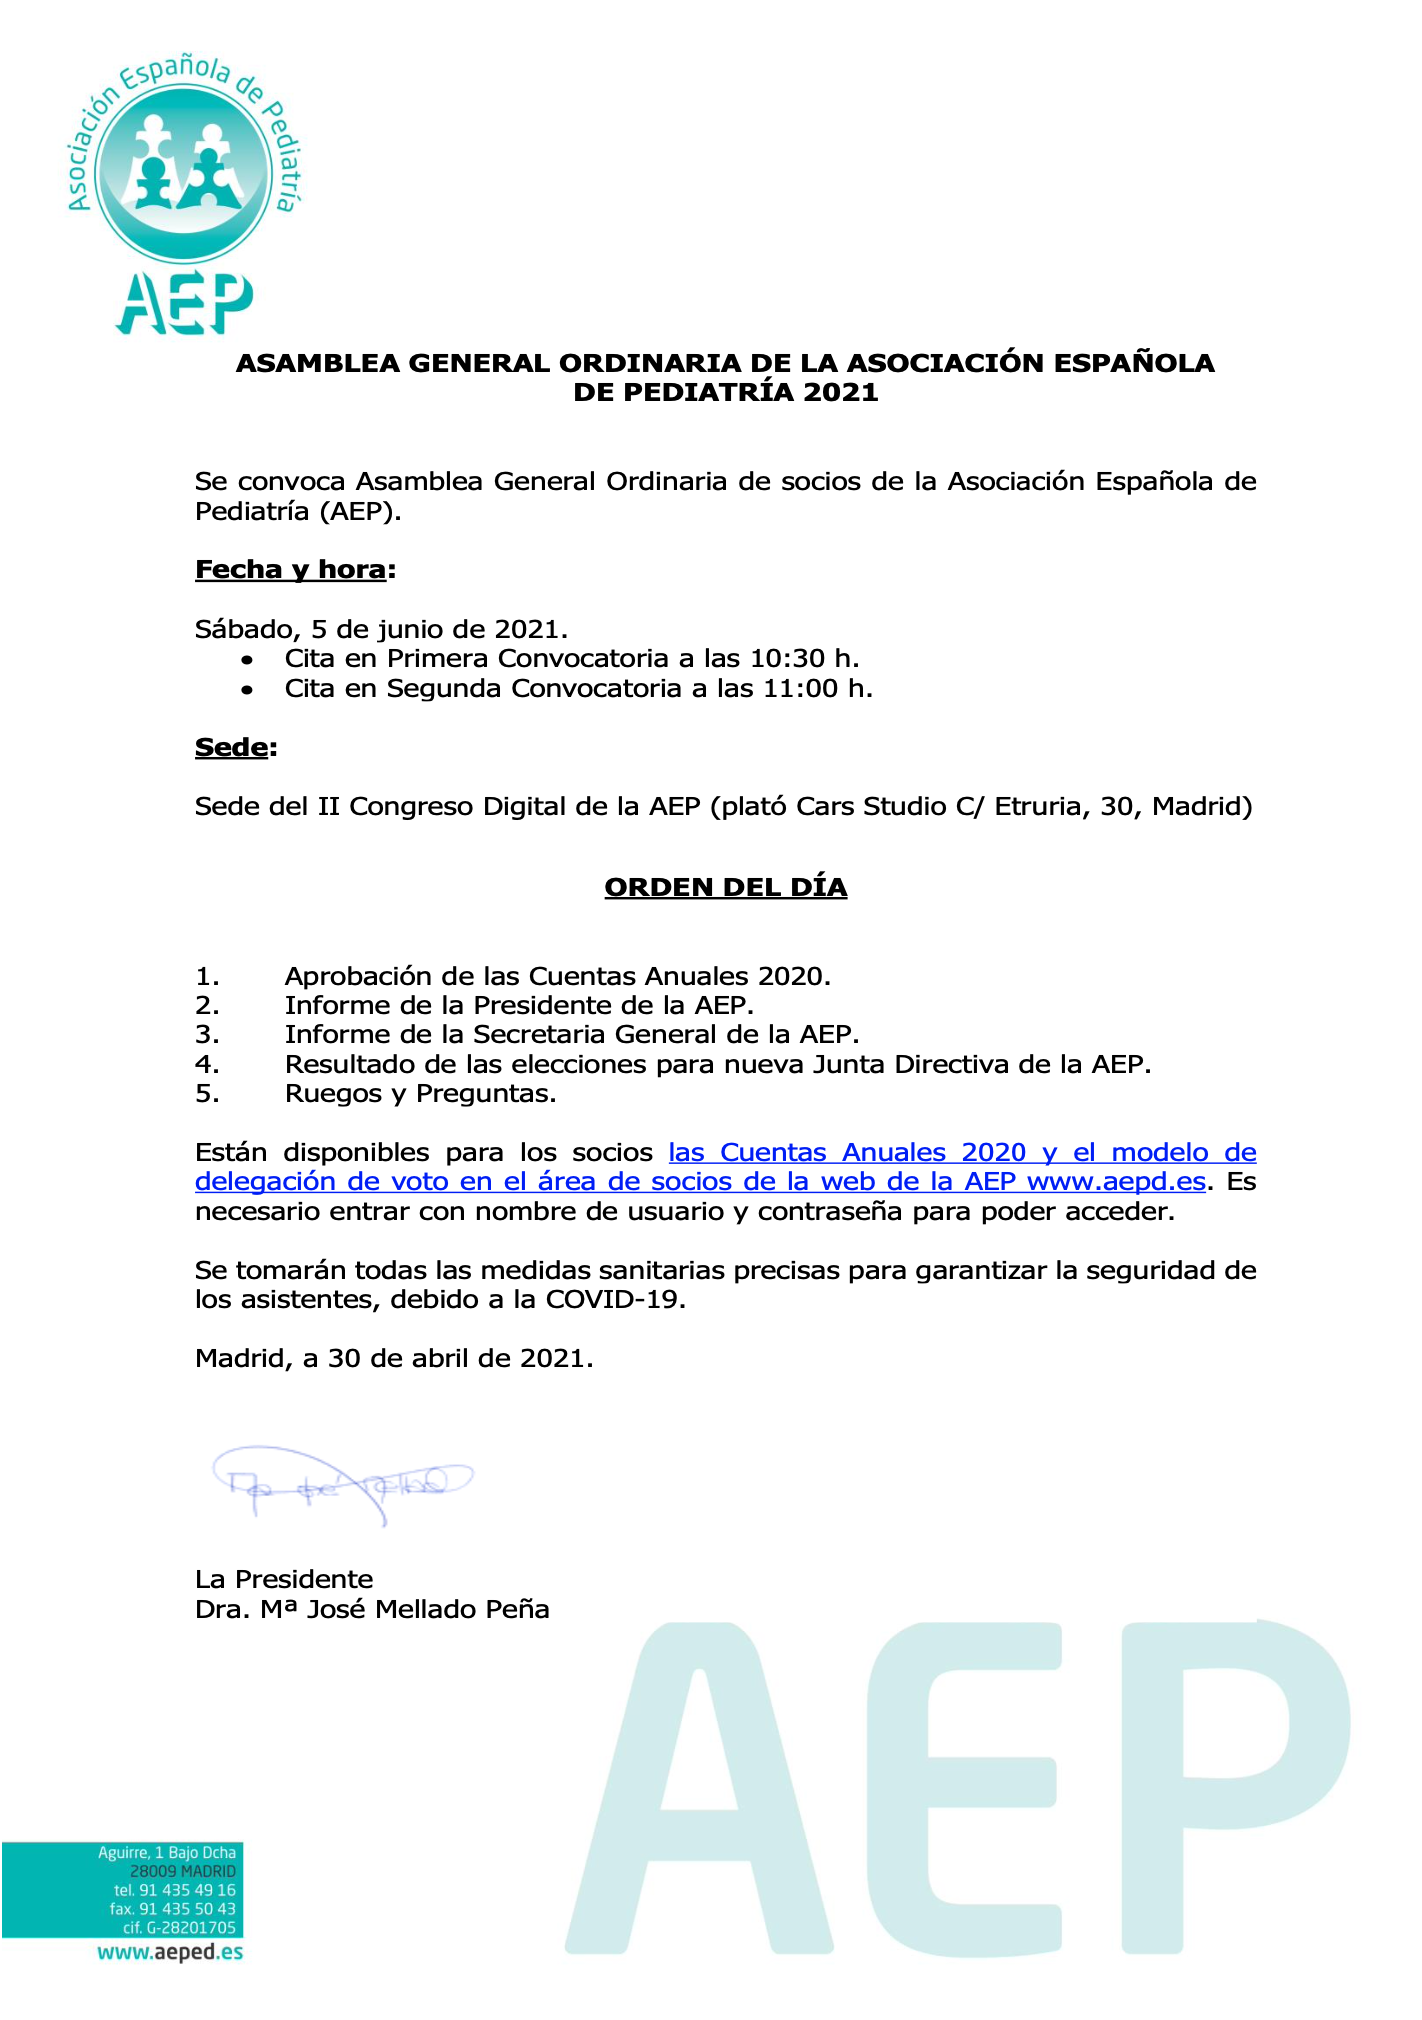 Convocatoria de Asamblea Ordinaria AEP 2021: Orden del día | Asociación  Española de Pediatría